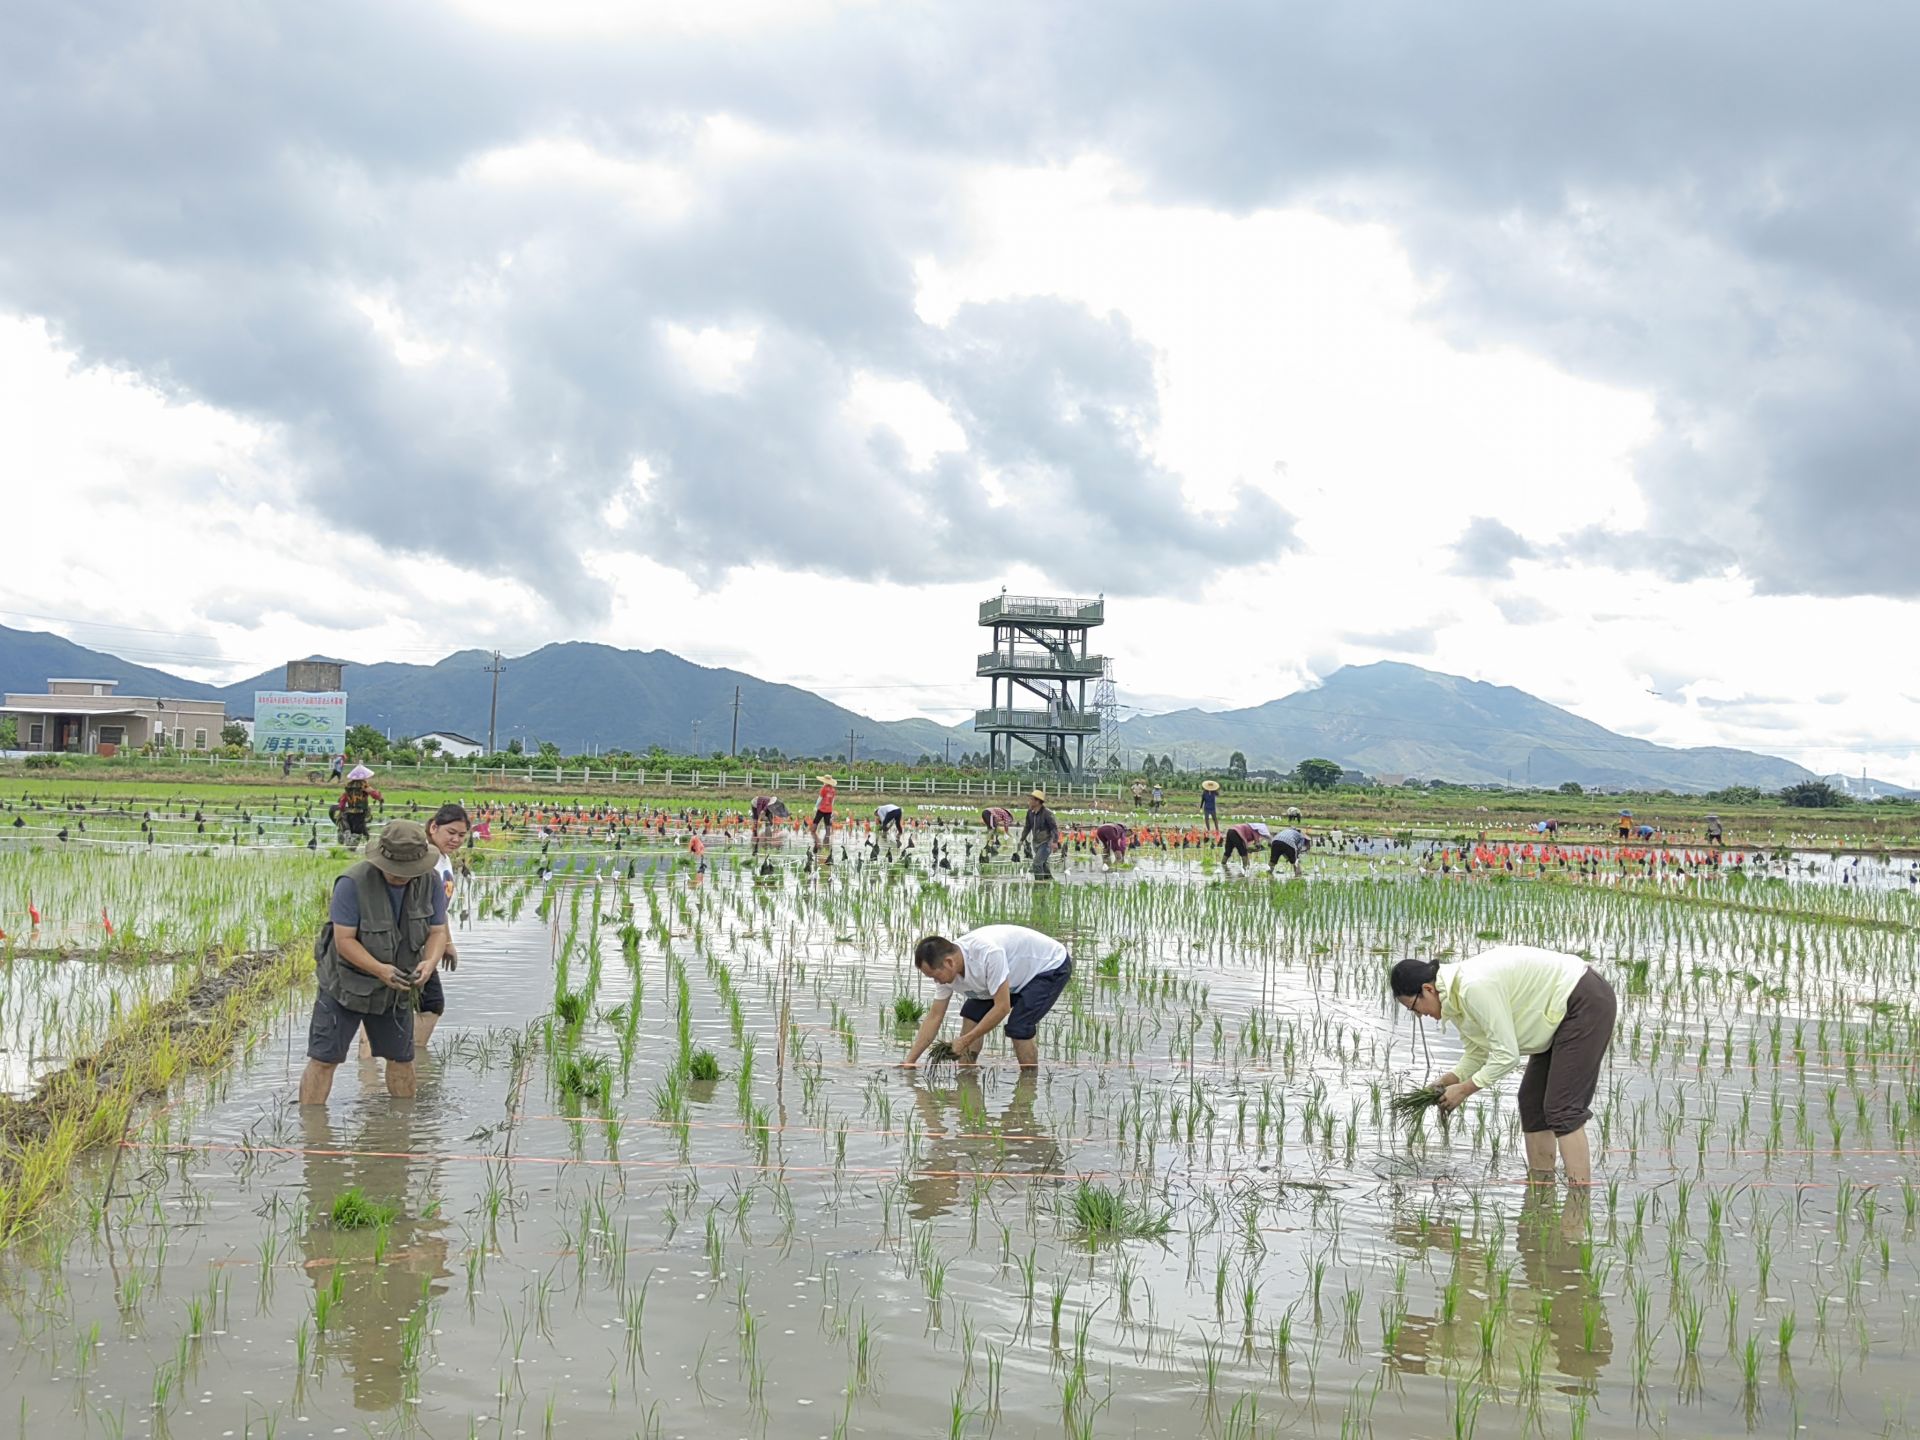 海丰可塘镇万亩油占米示范基地种下稻田画，9月下旬将可开始观赏